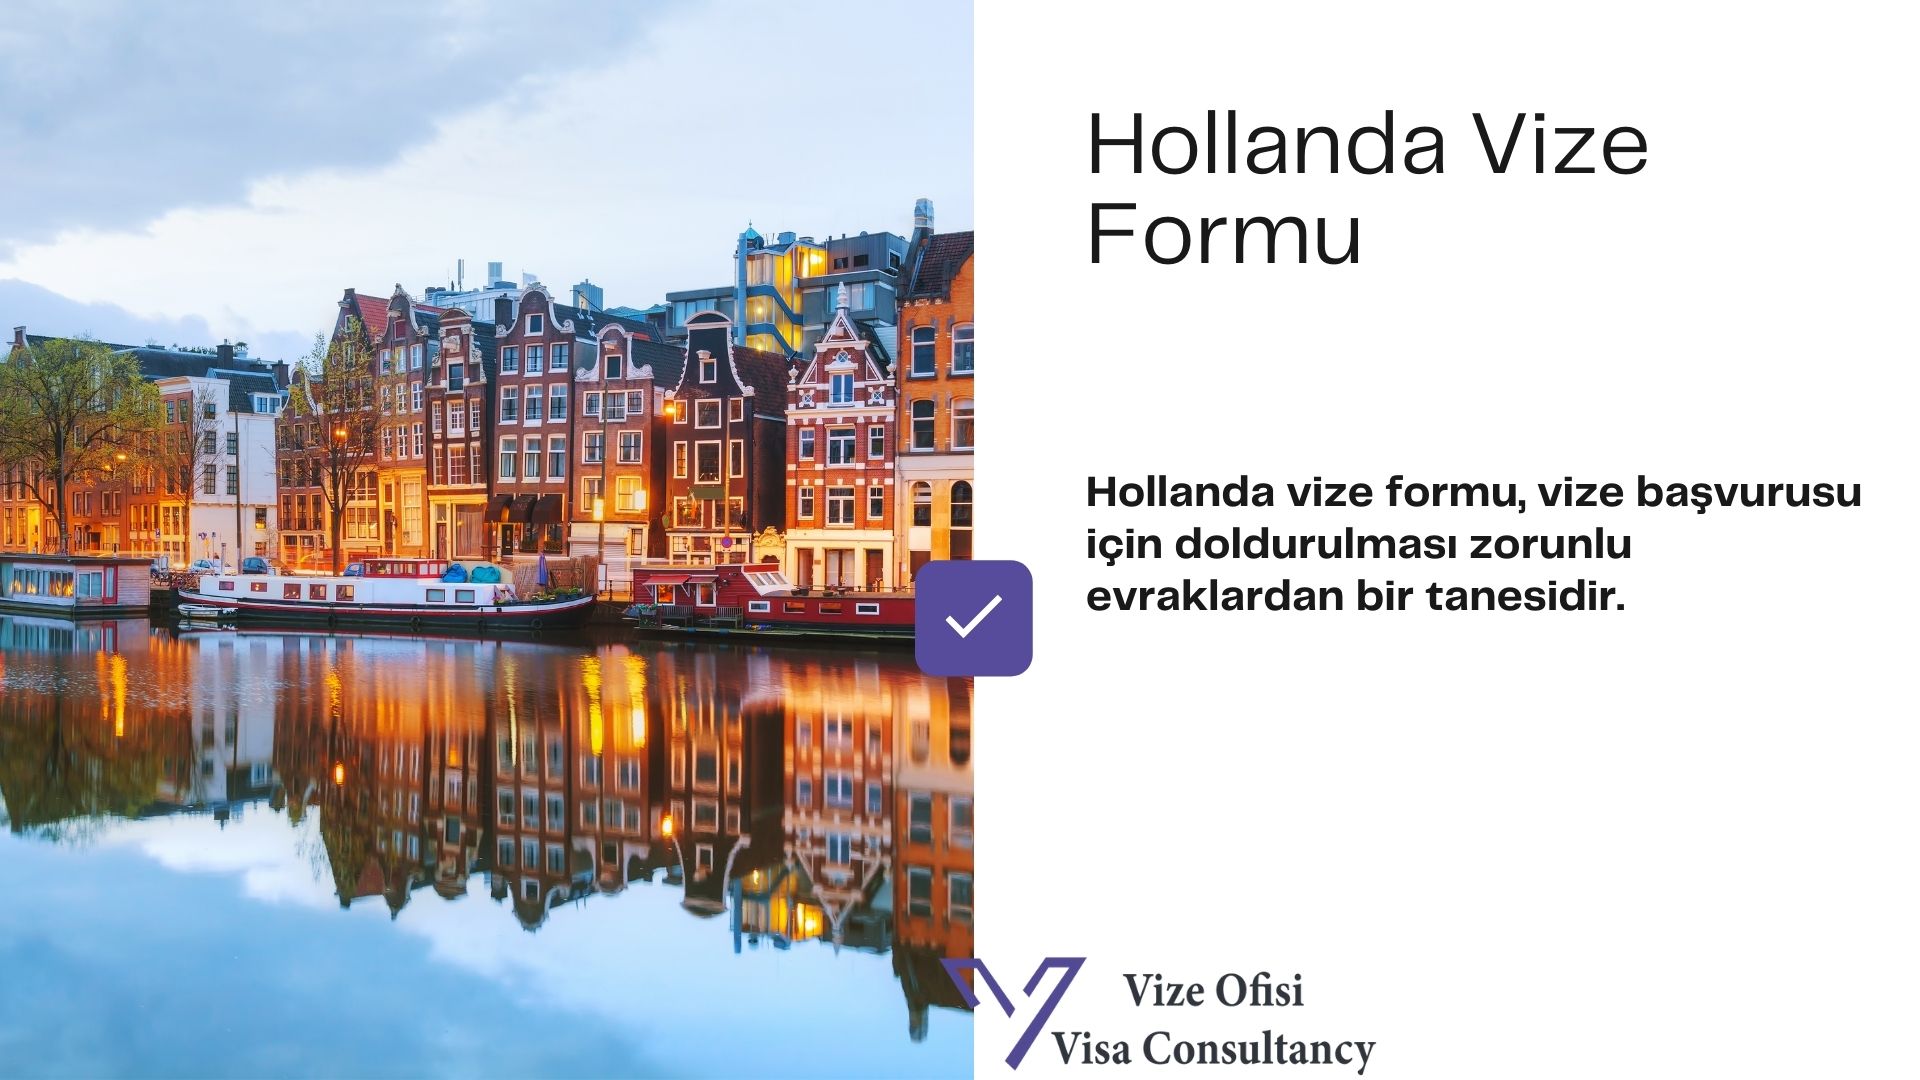 Hollanda Vize Form ve Dilekçe 2021